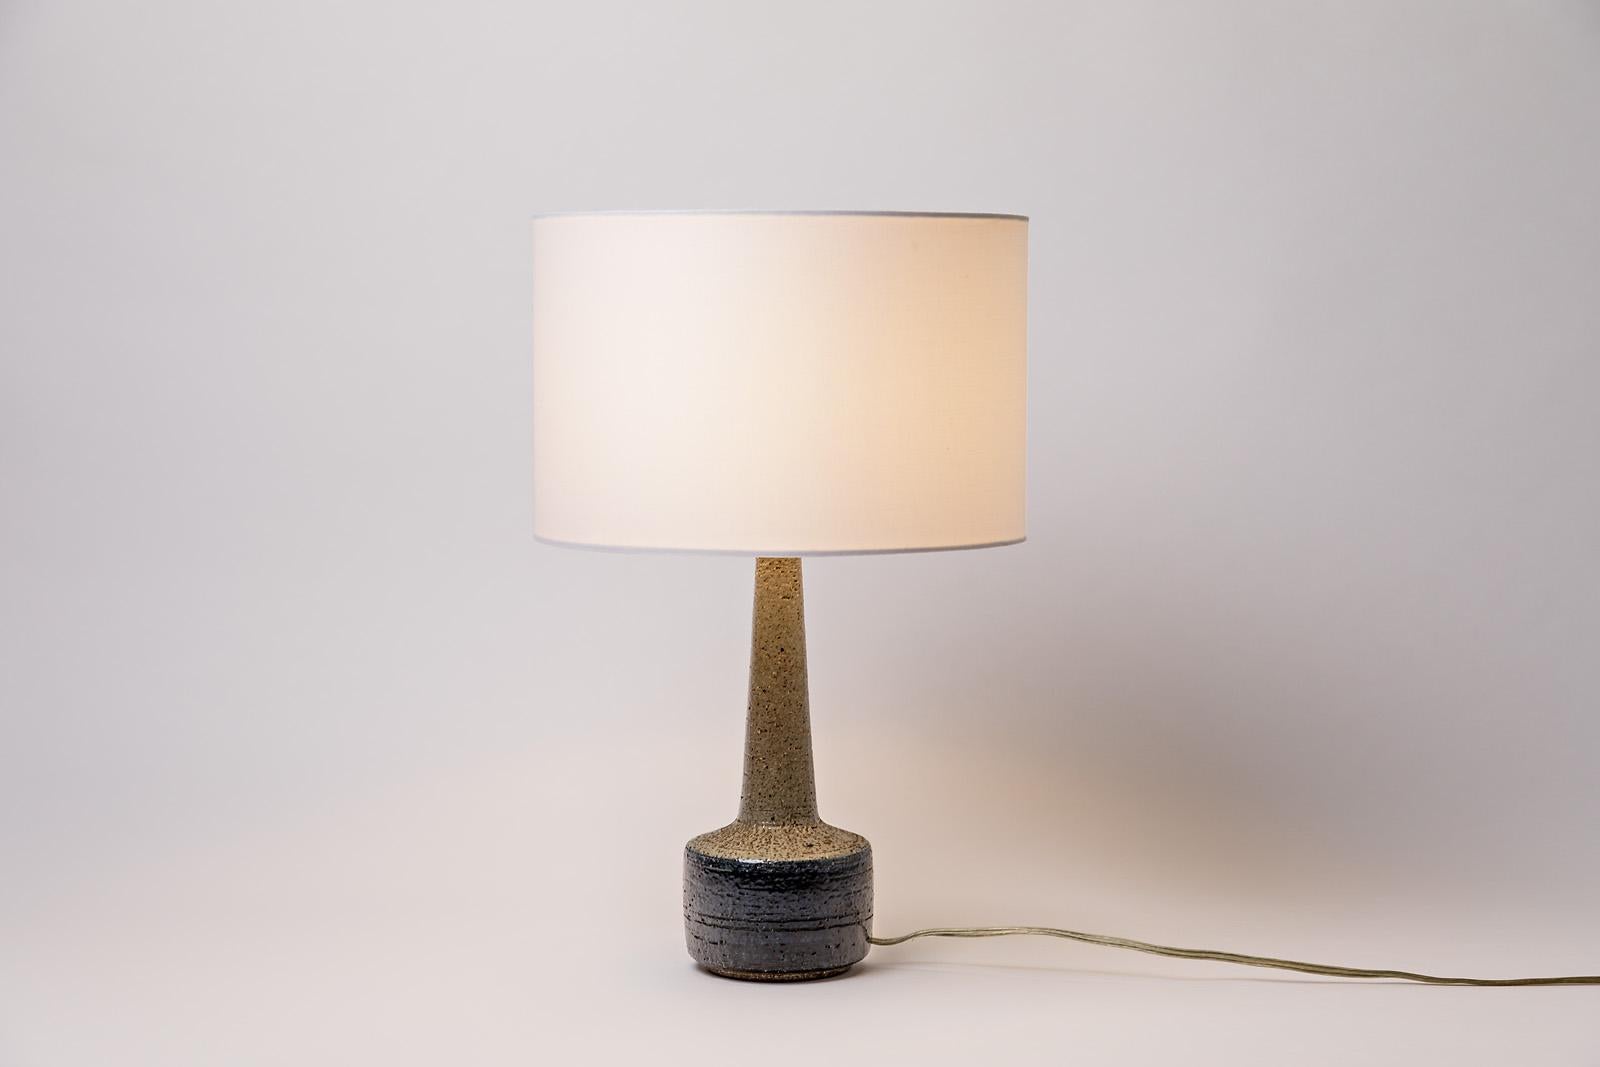 20th Century Scandinavian Midcentury Ceramic Table Lamp by Per Linnemann for Palshus Design